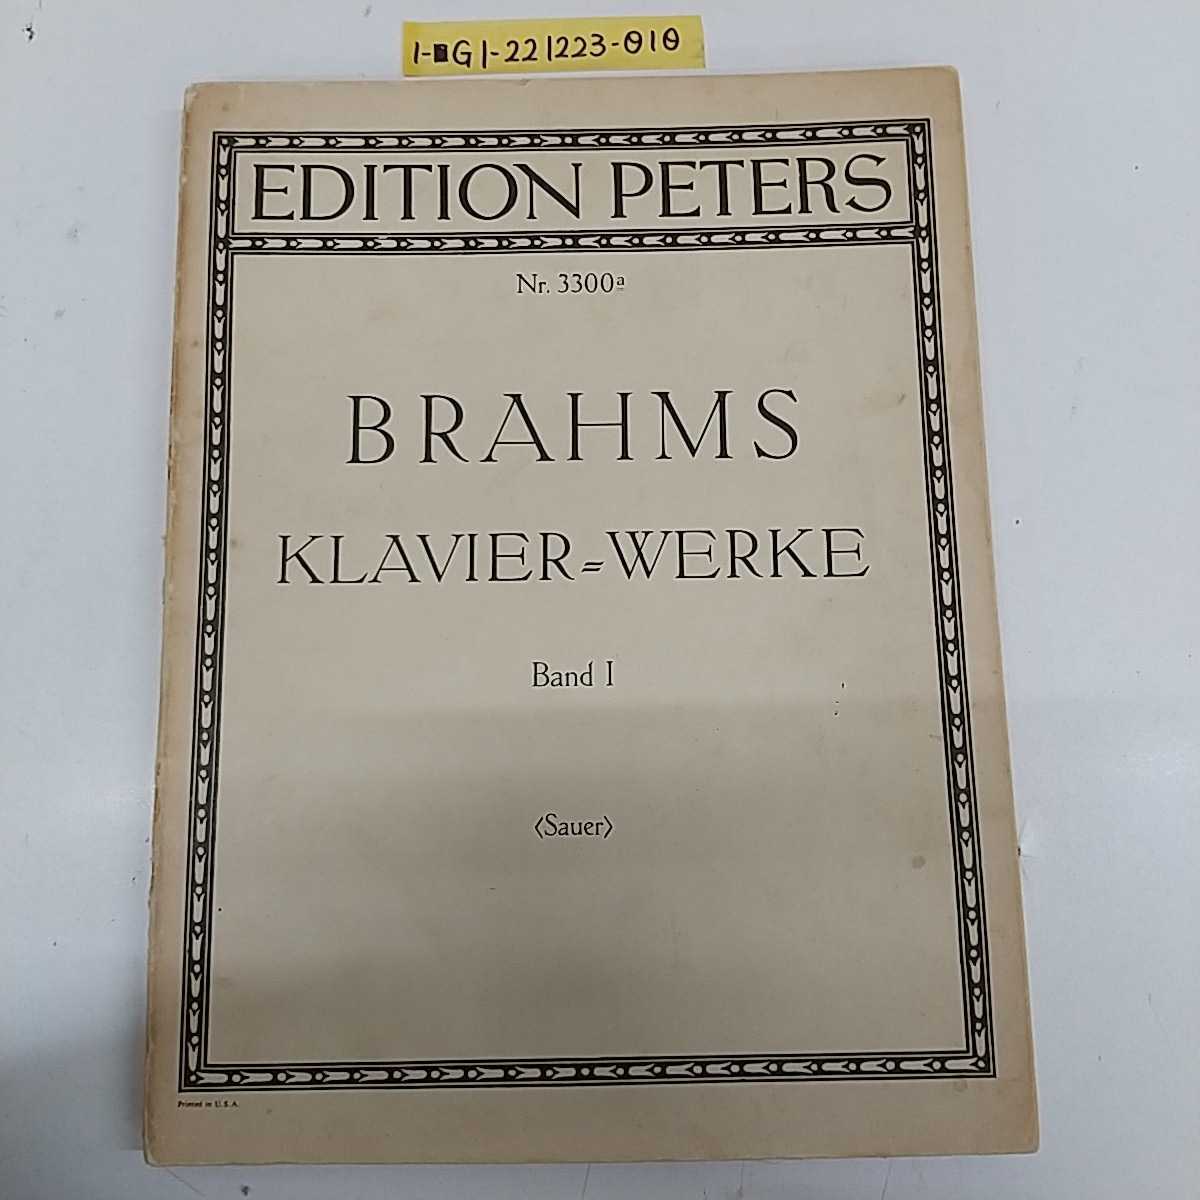 1-■ EDITION PETERS BRAHMS KLAVIER=WERKE Band Ⅰ 楽譜 ピアノ譜 ソナタ Sonate_画像1